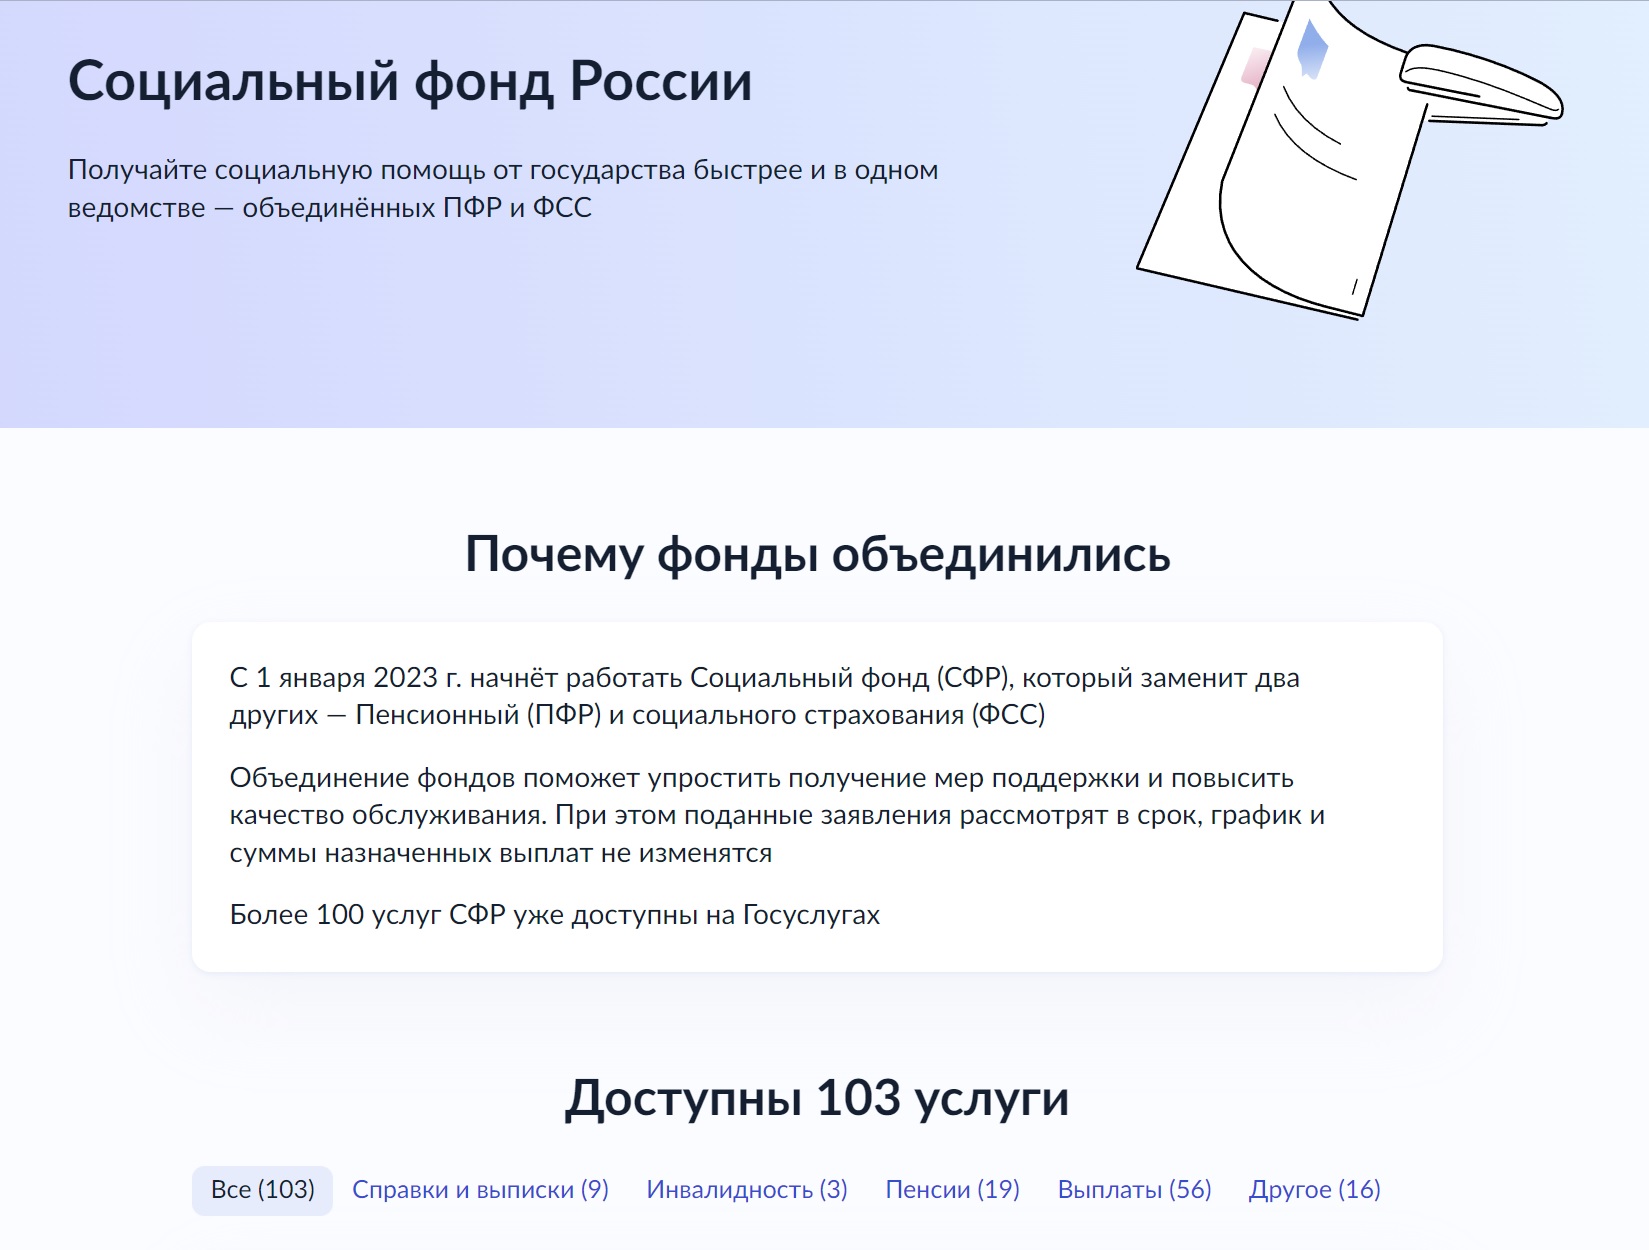 Granderator • ПФР и ФСС с 1 января 2023 года объединят в Социальный фонд  России